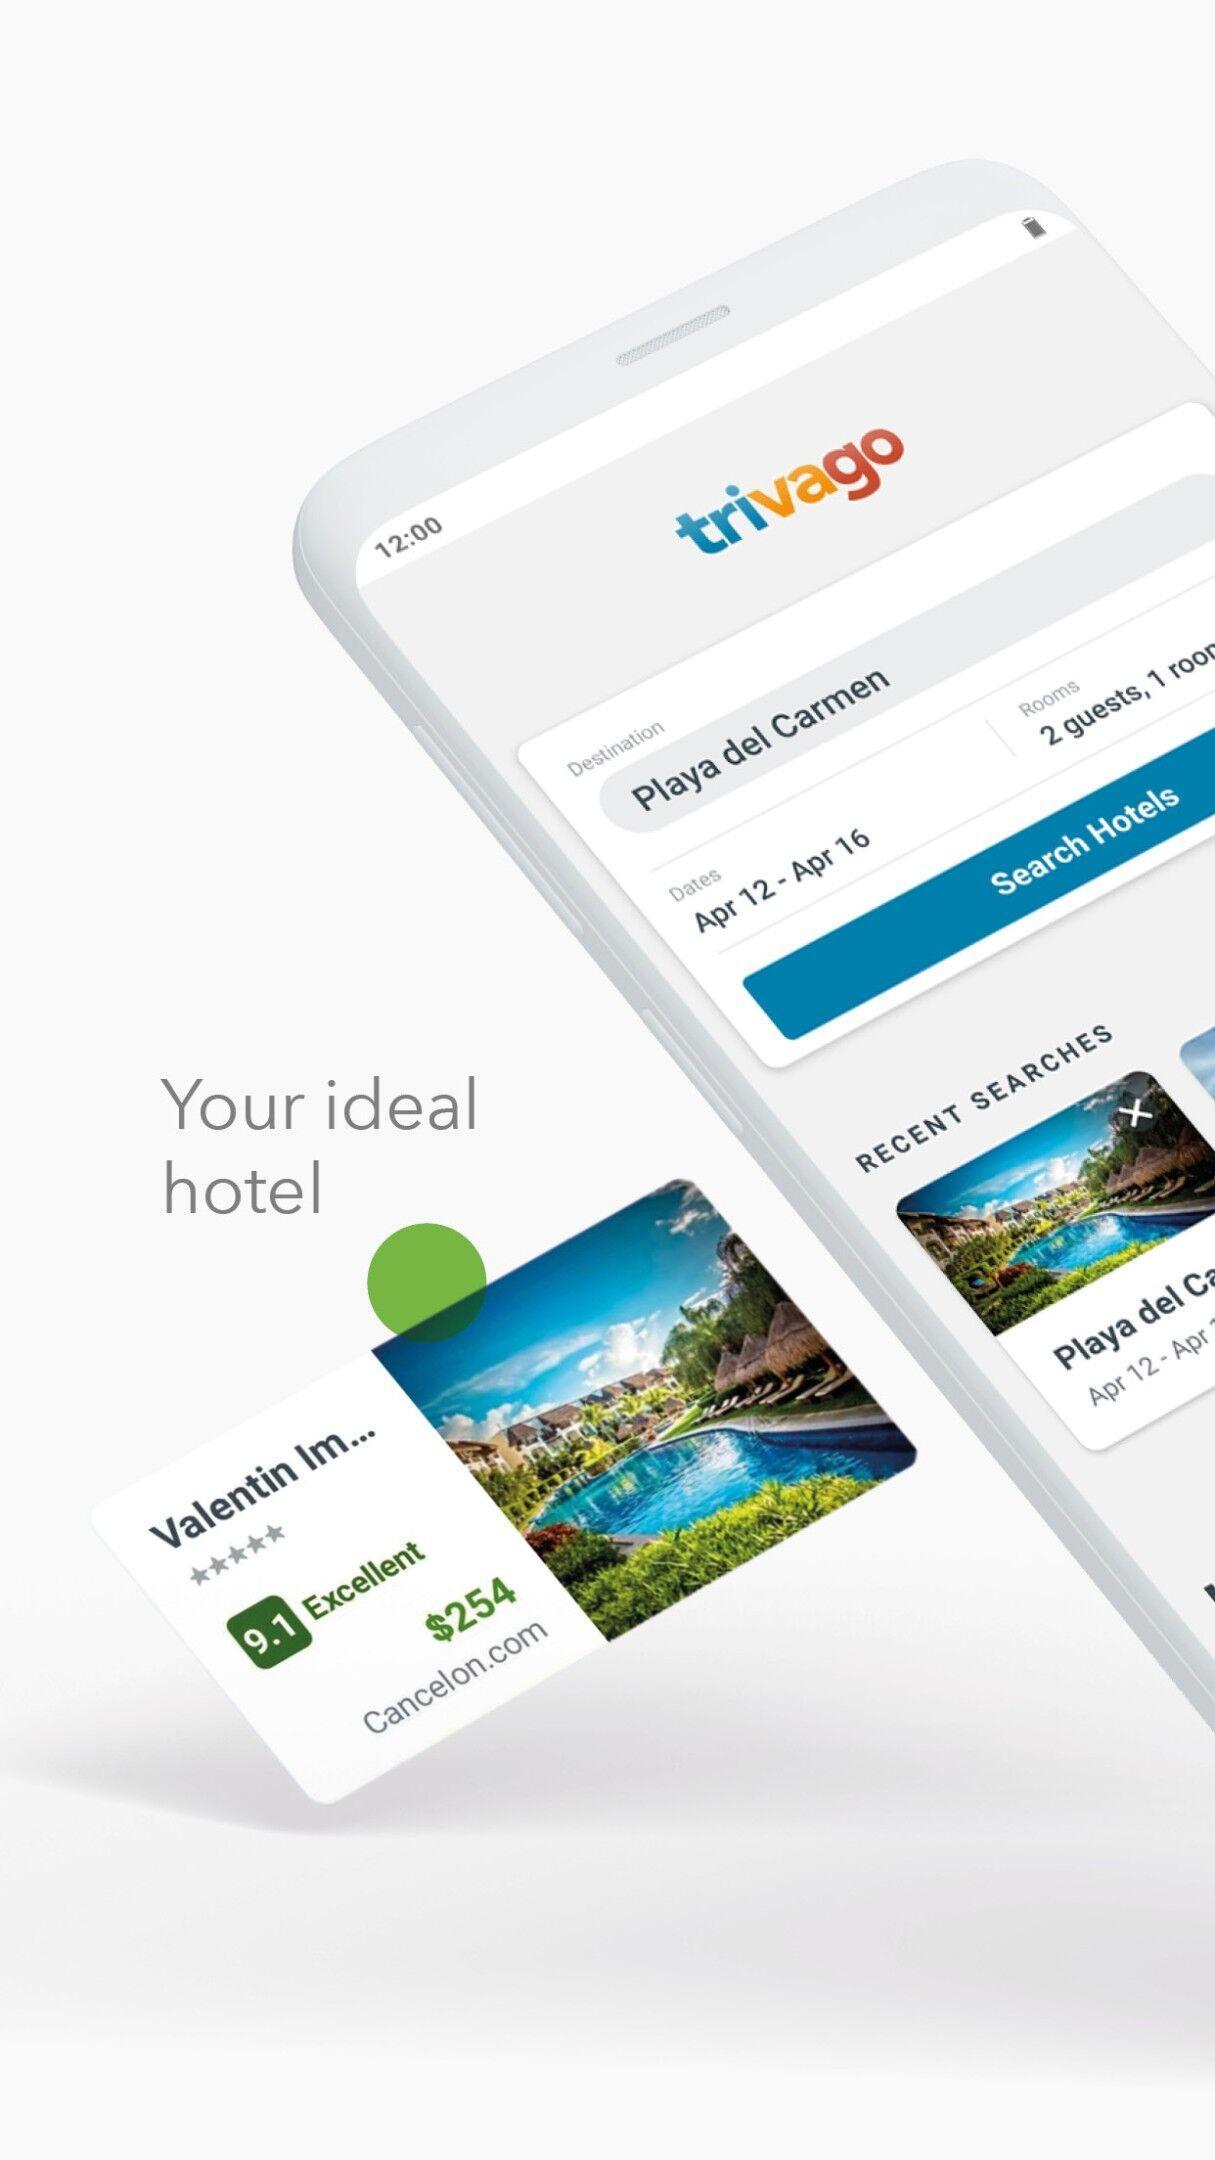 trivago Compare hotel prices 5.31.0 Screenshot 1